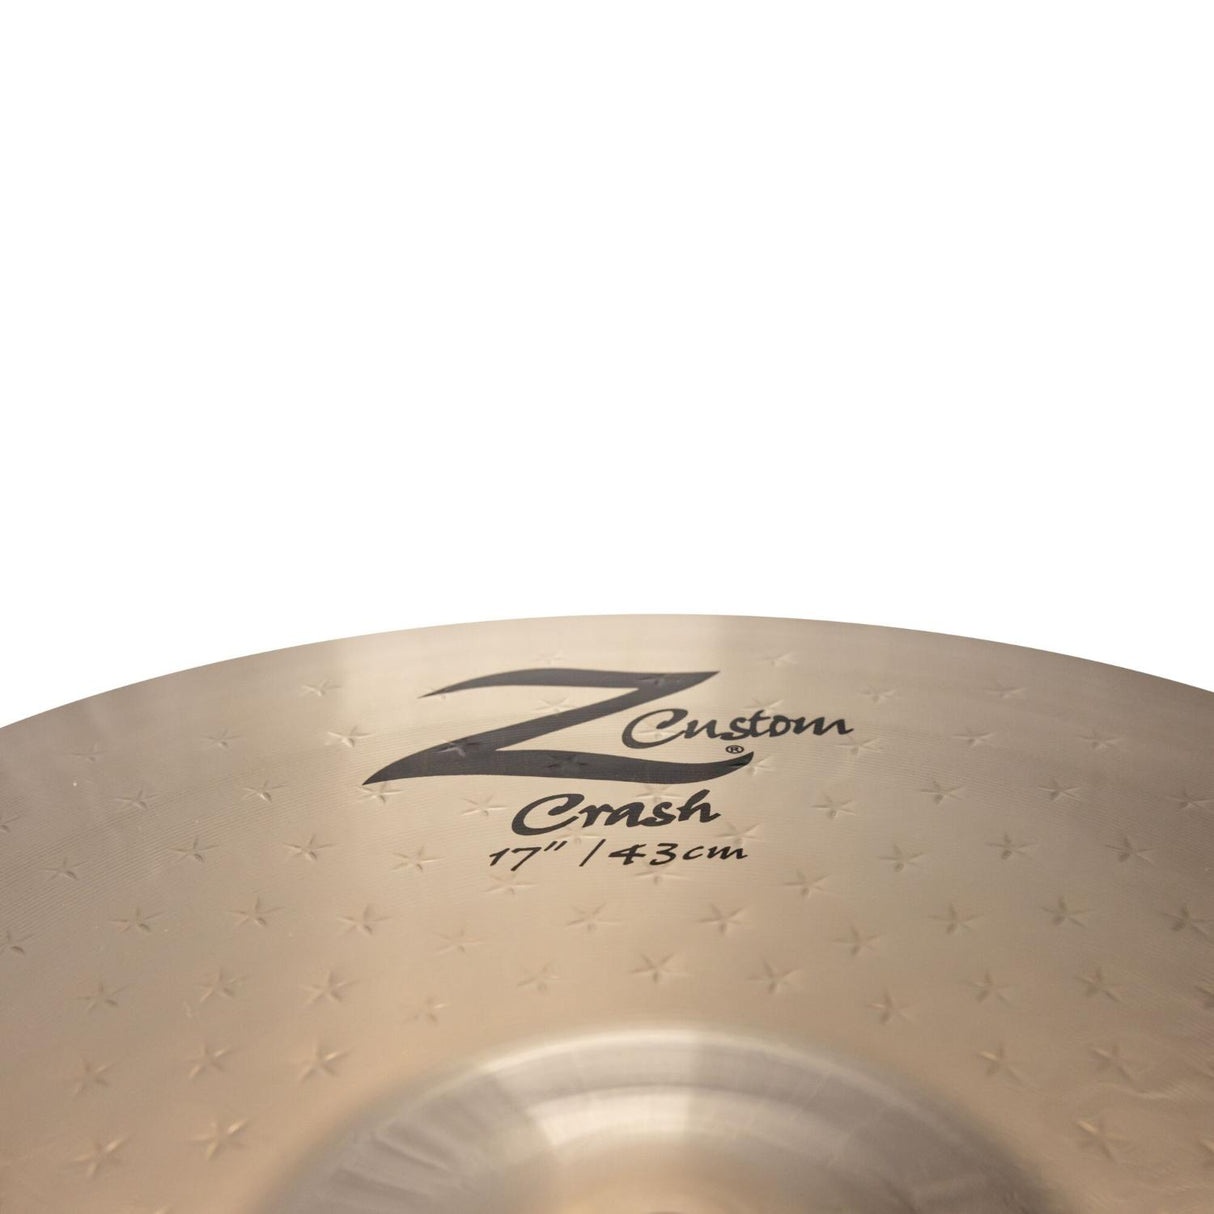 Zildjian Z Custom Crash Cymbal 17" - Drum Center Of Portsmouth